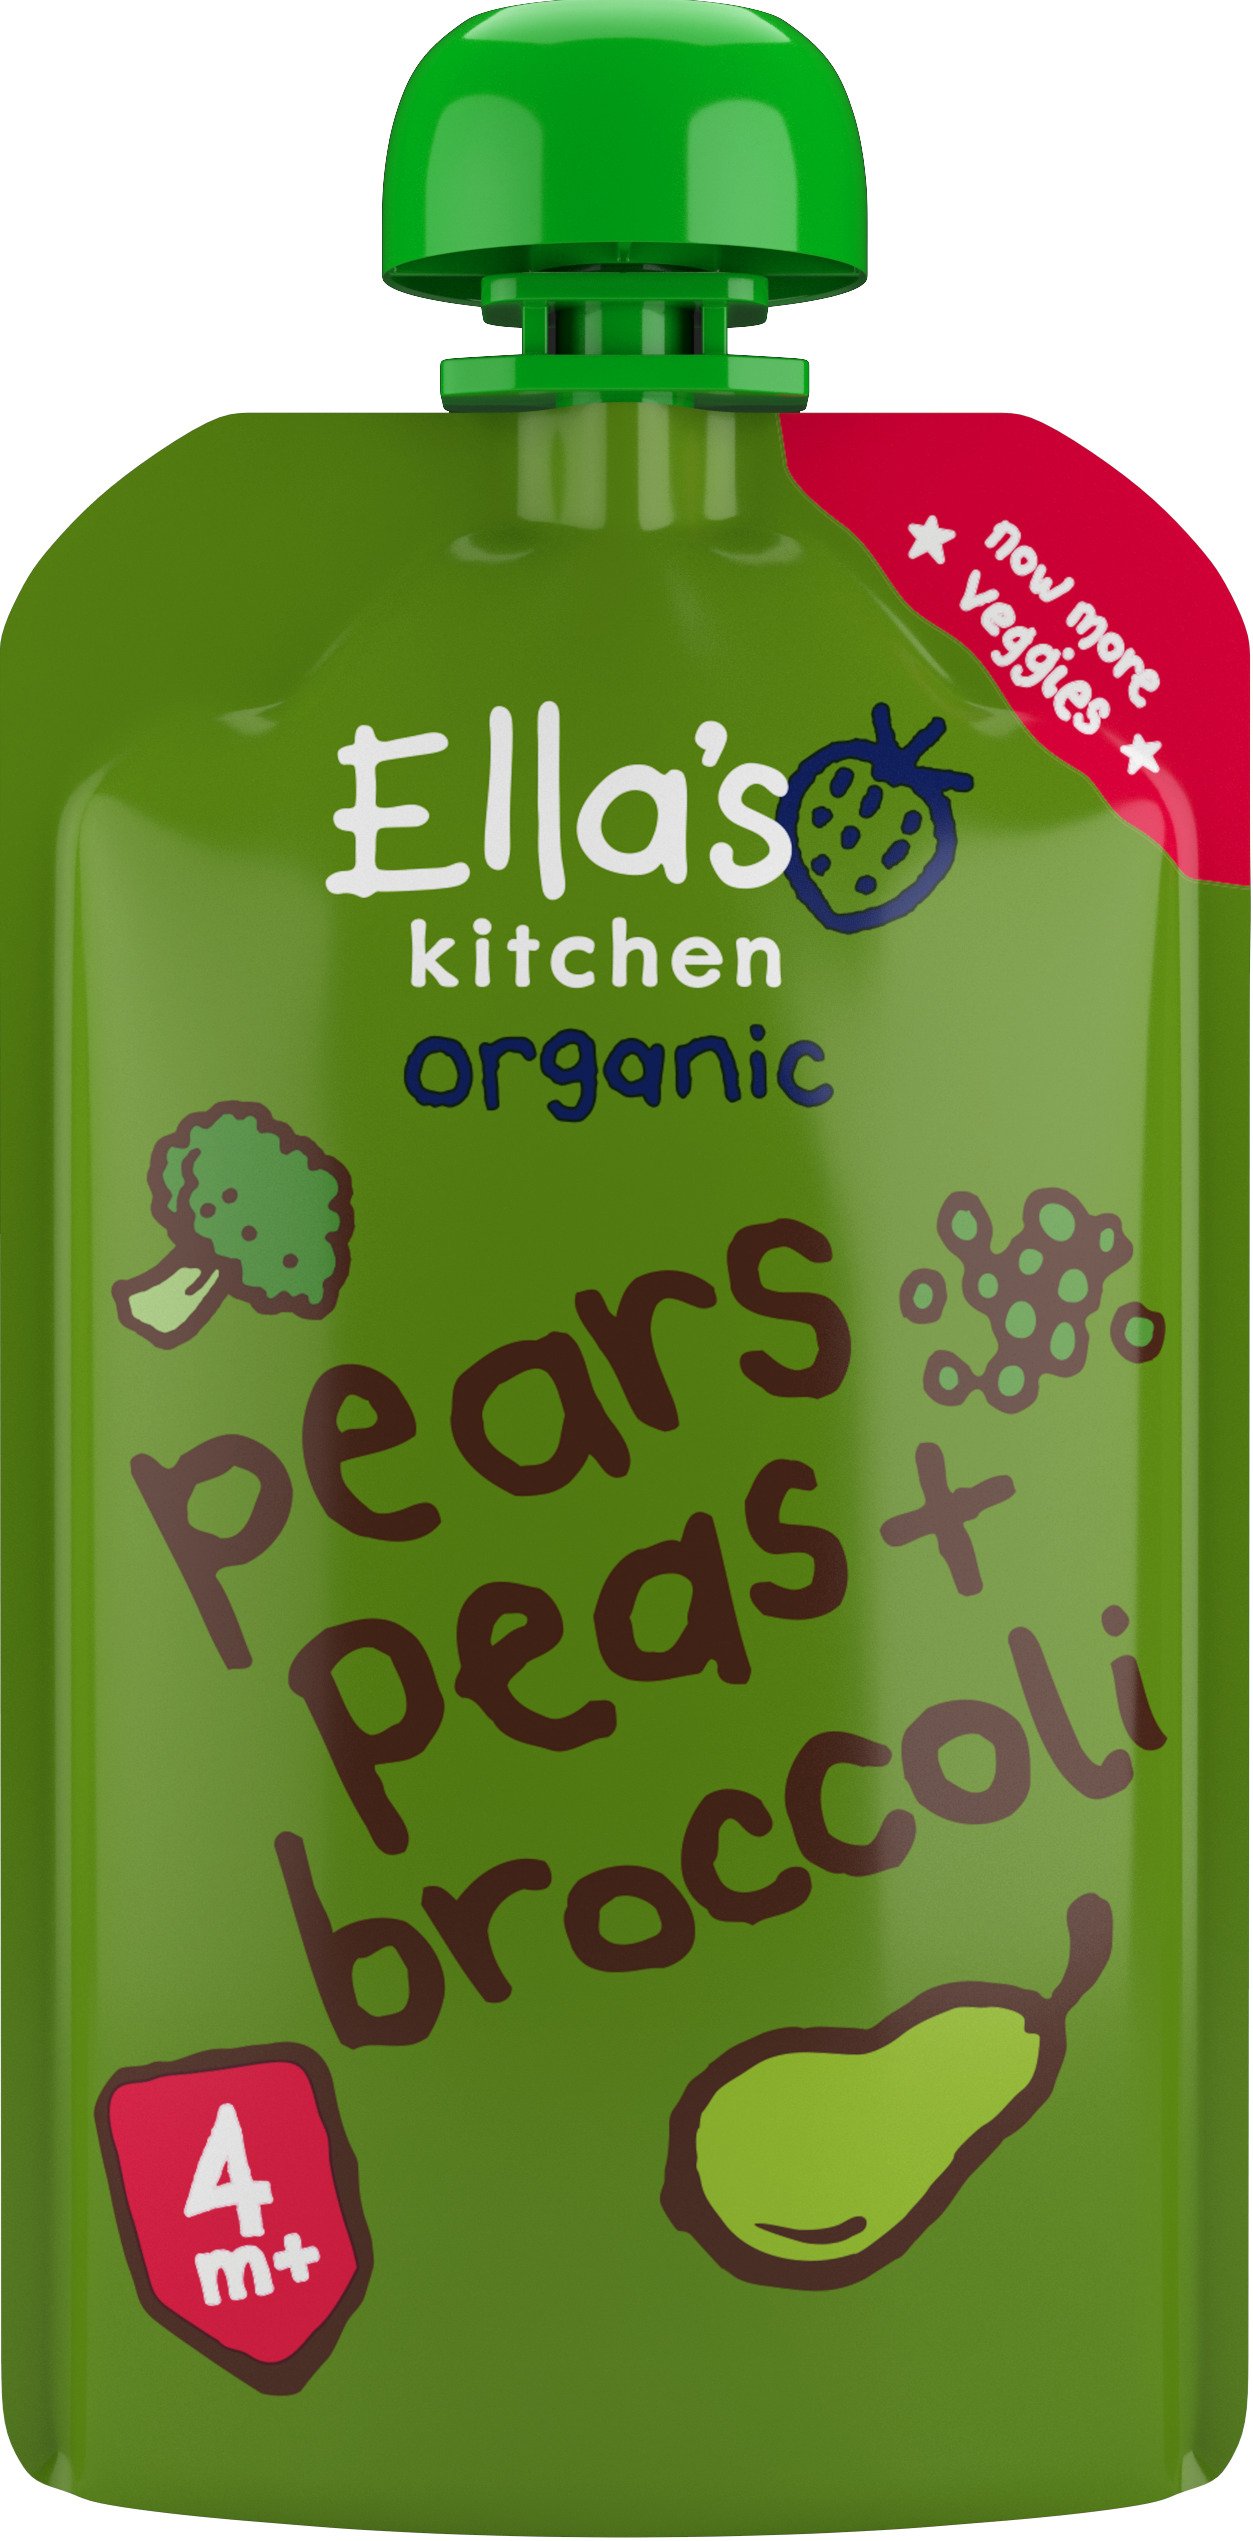 Ella's Kitchen Päron, Ärtor & Broccoli 120g